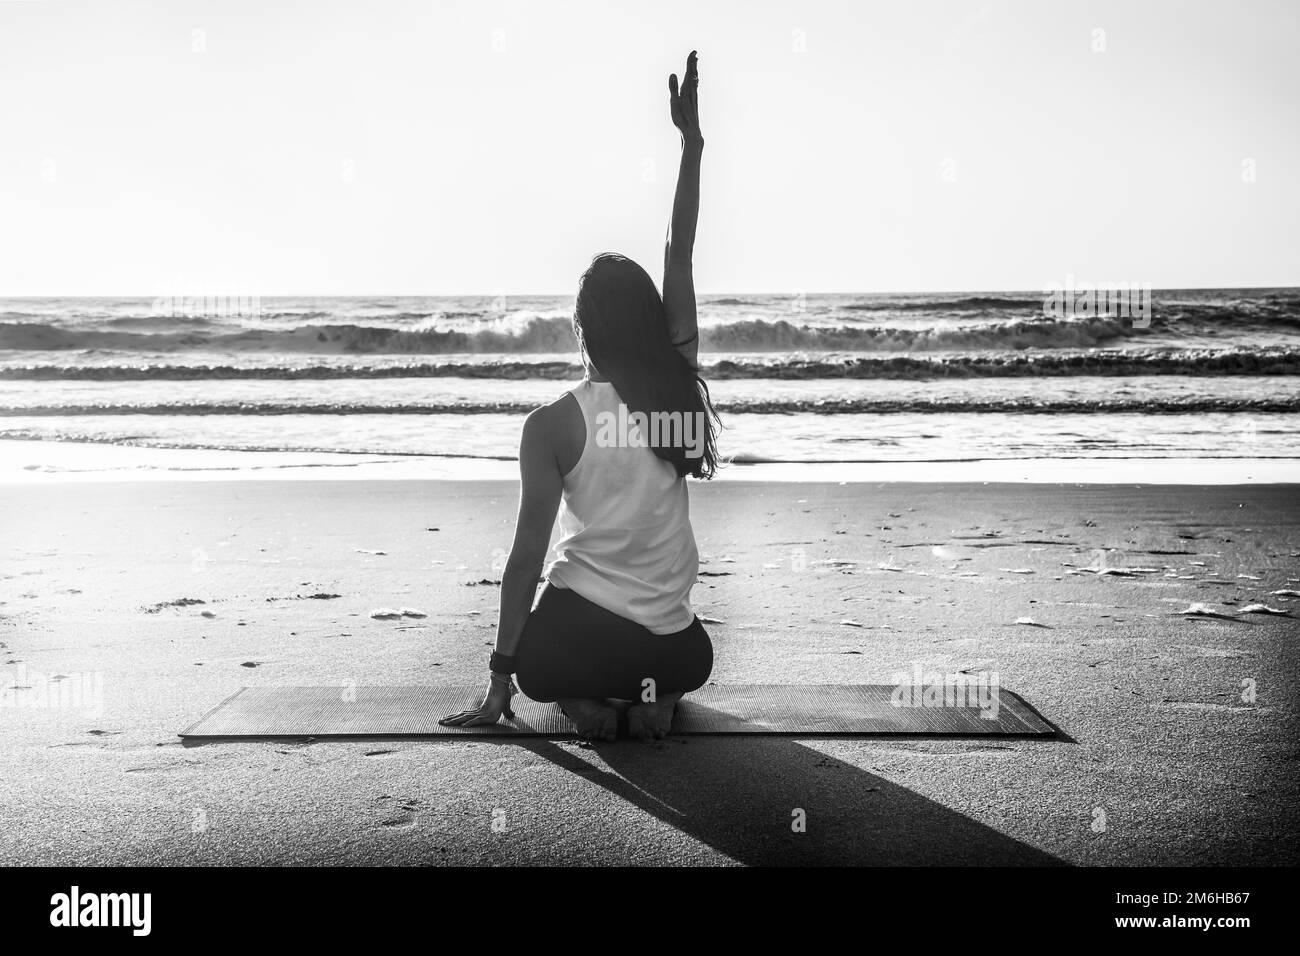 Photo d'une jeune femme pratiquant le yoga à la plage. Photographie en noir et blanc Banque D'Images